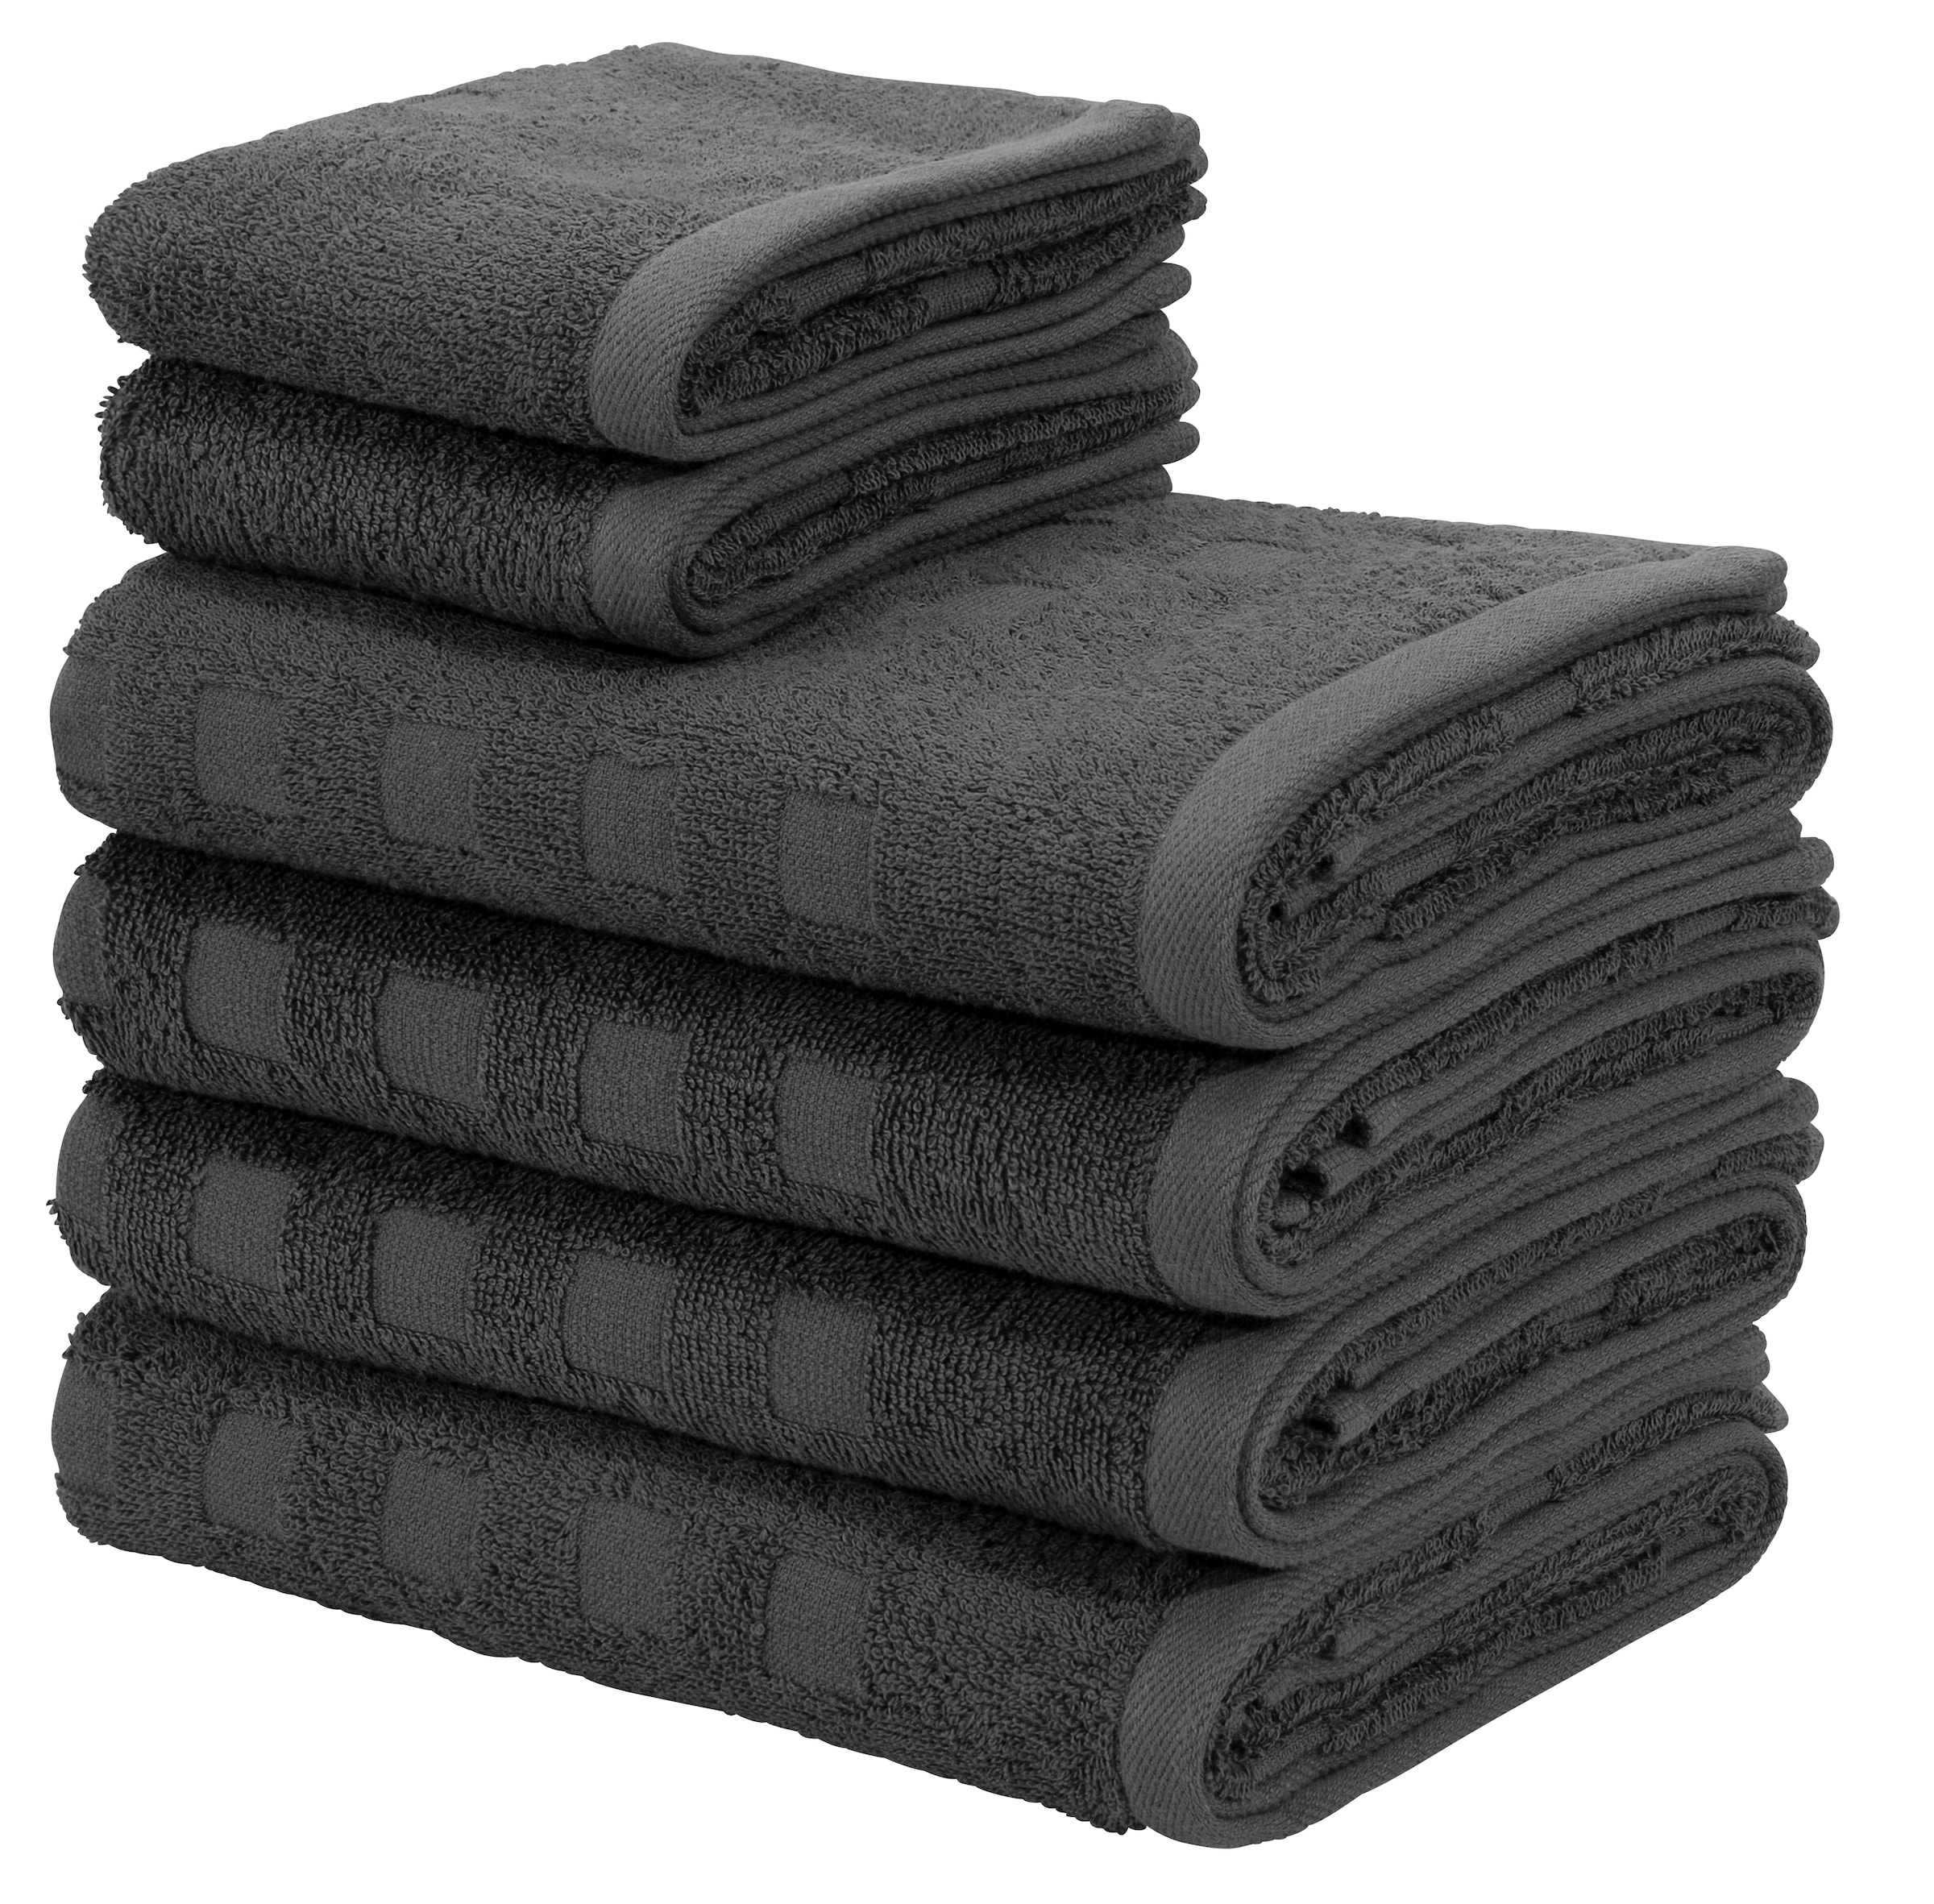 Handtuch-Sets ▷ Handtücher im | BAUR online kaufen Set